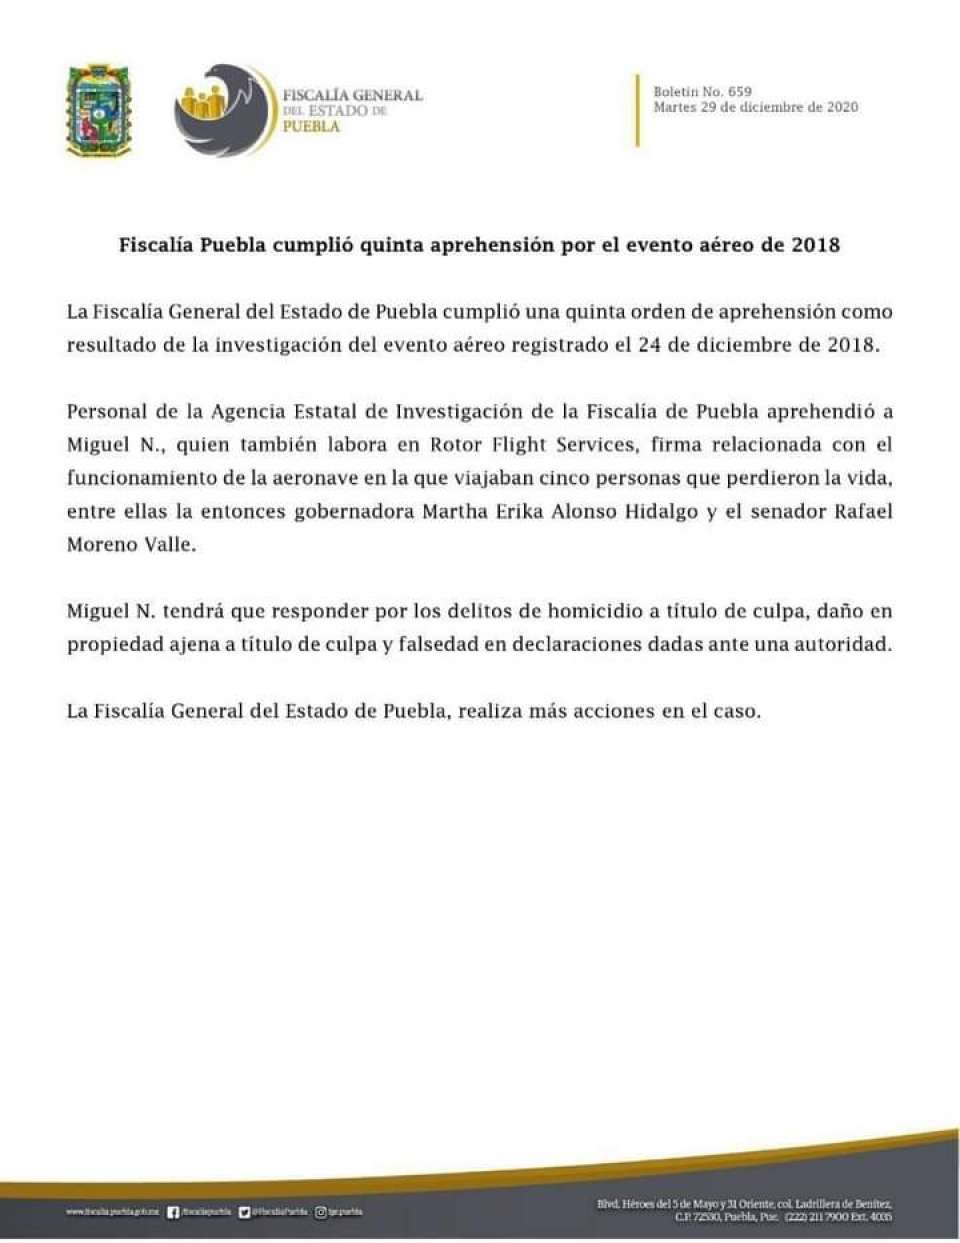 Fiscalía de Puebla cumplió quinta aprehensión por el evento aéreo de 2018.